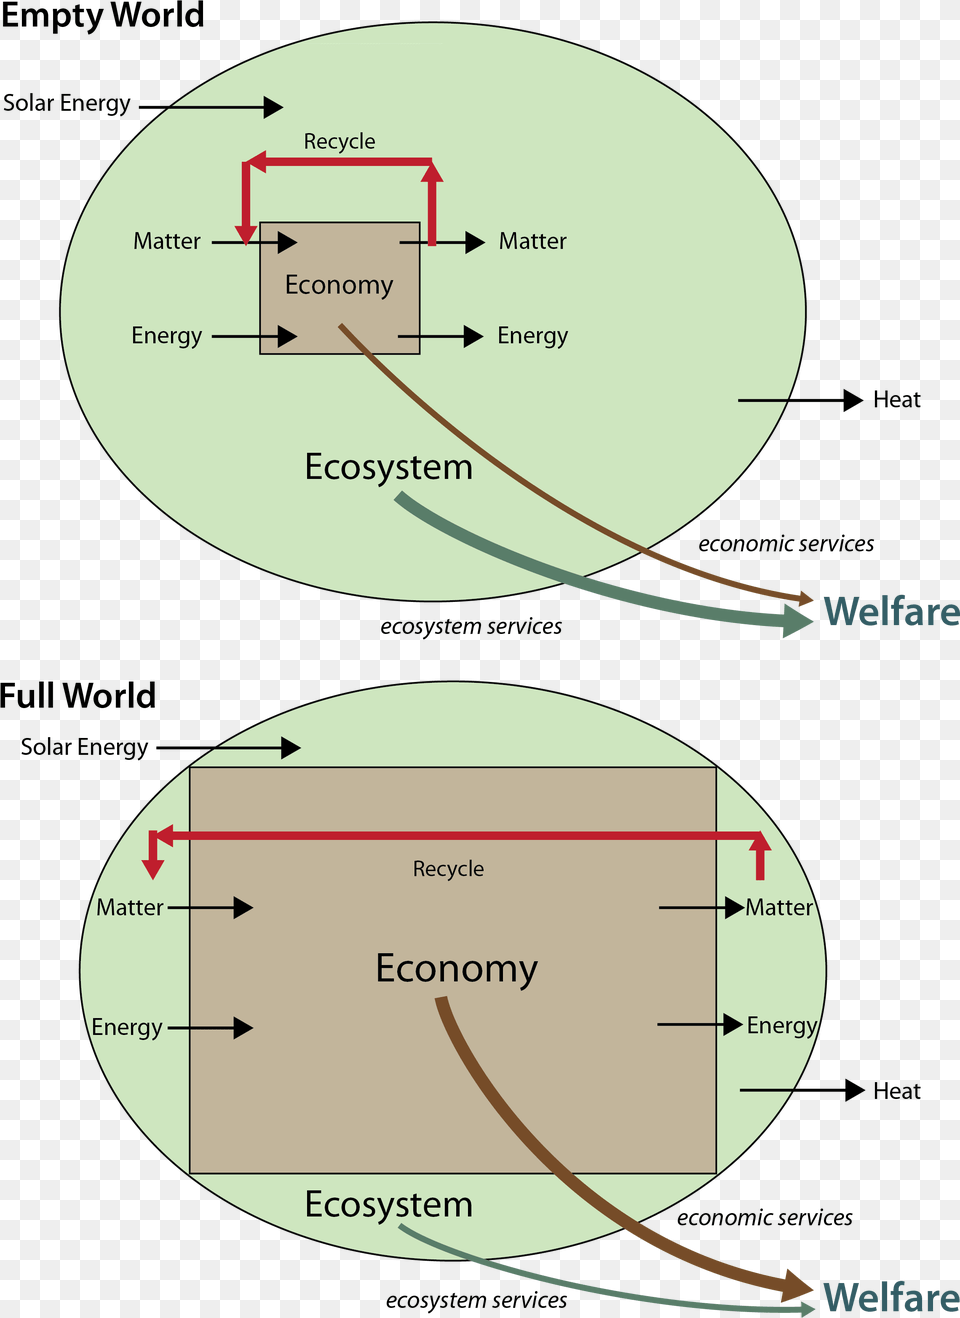 Full World Economy Empty World Full World, Disk, Chart, Plot, Diagram Png Image